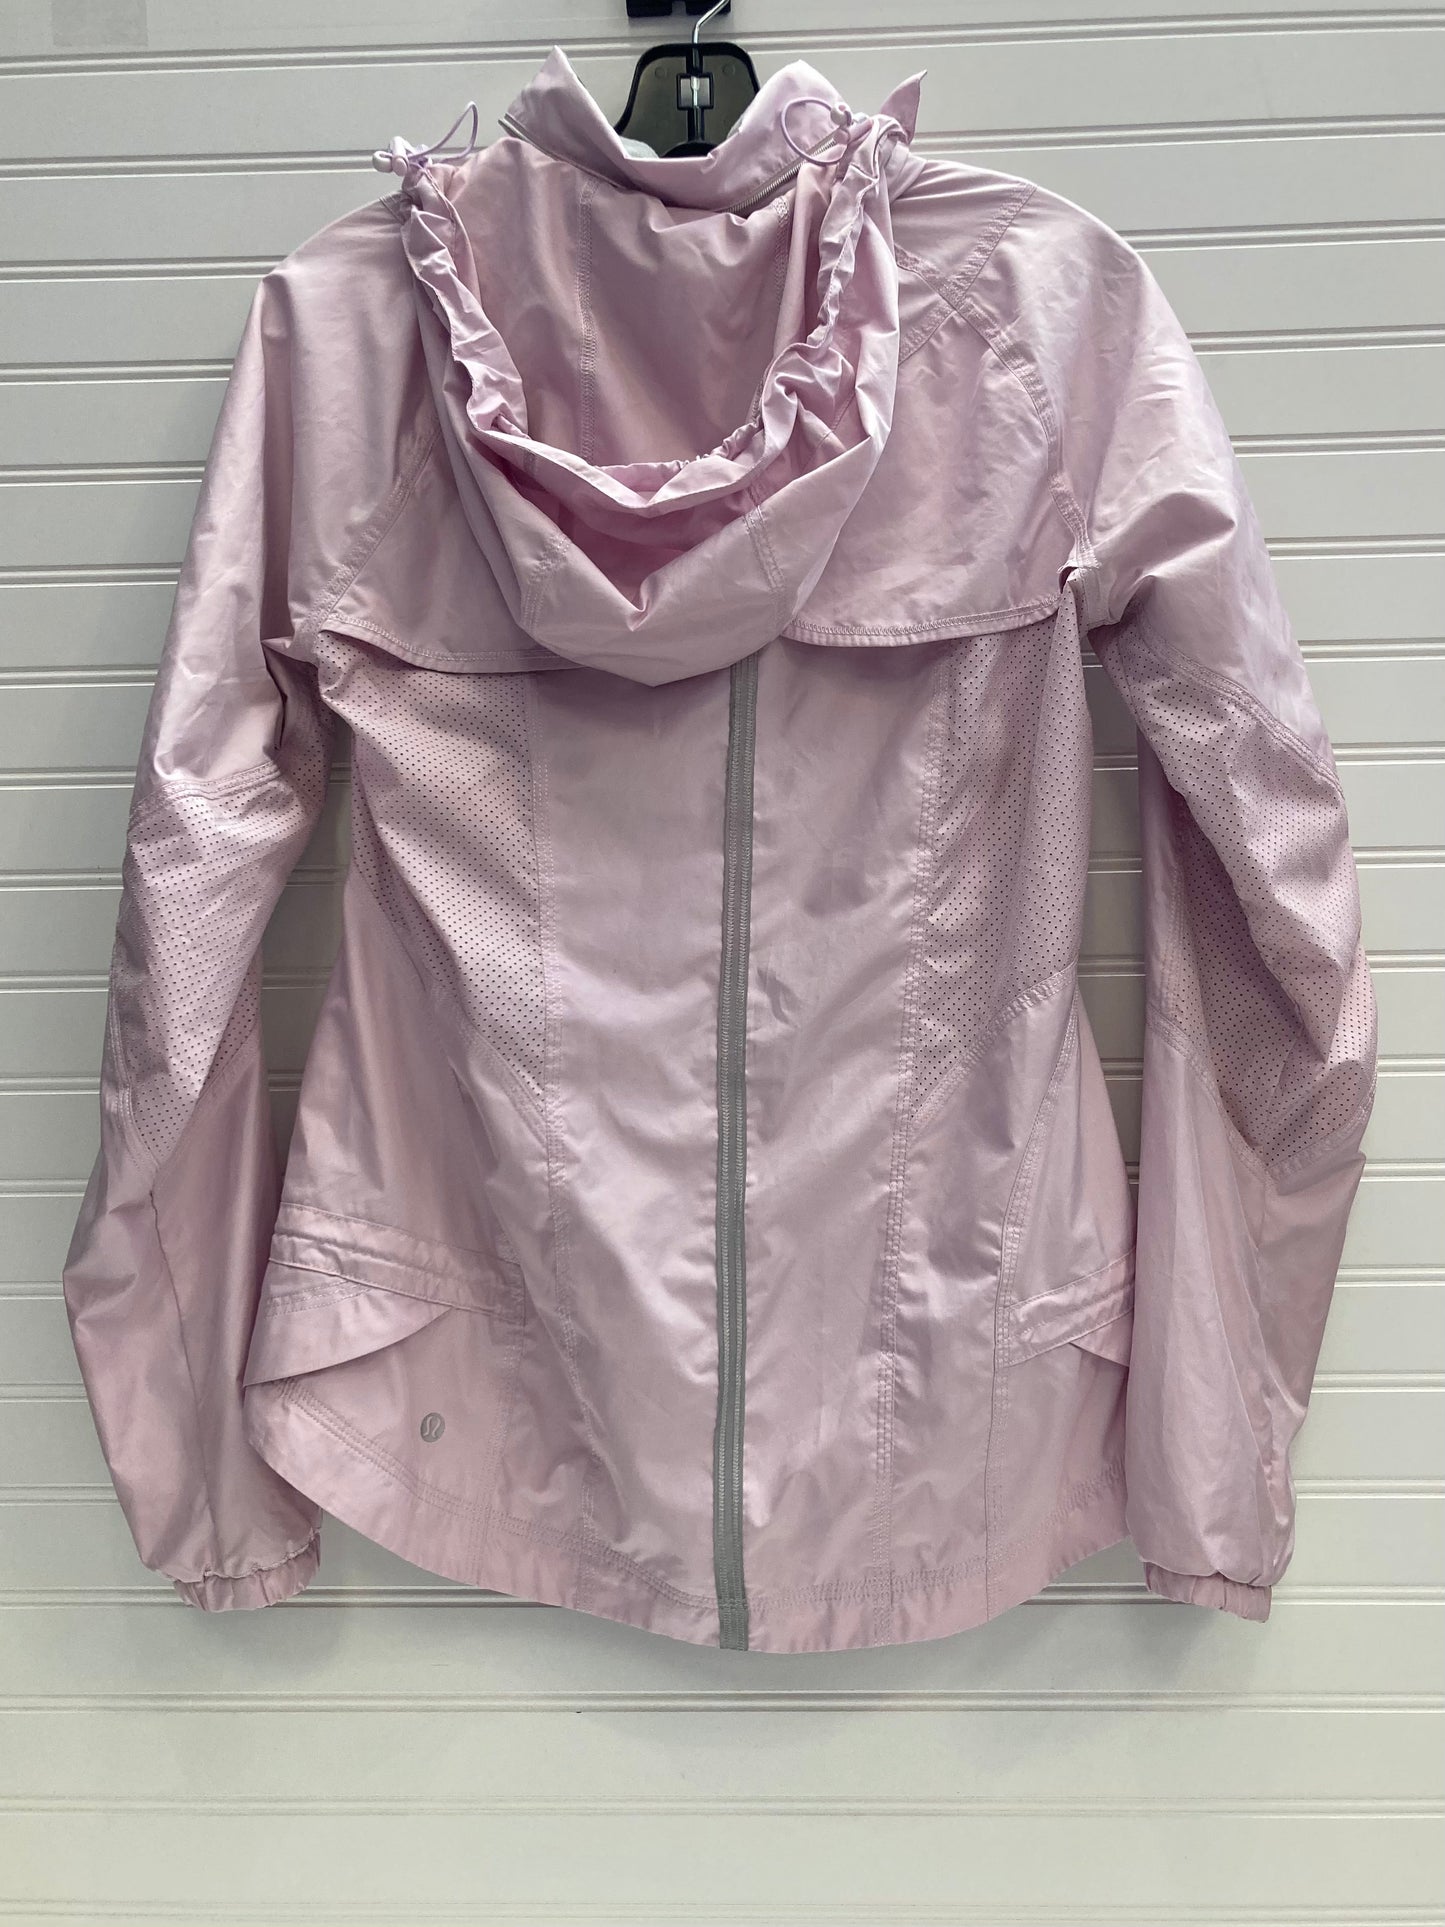 Pink Athletic Jacket Lululemon, Size 6